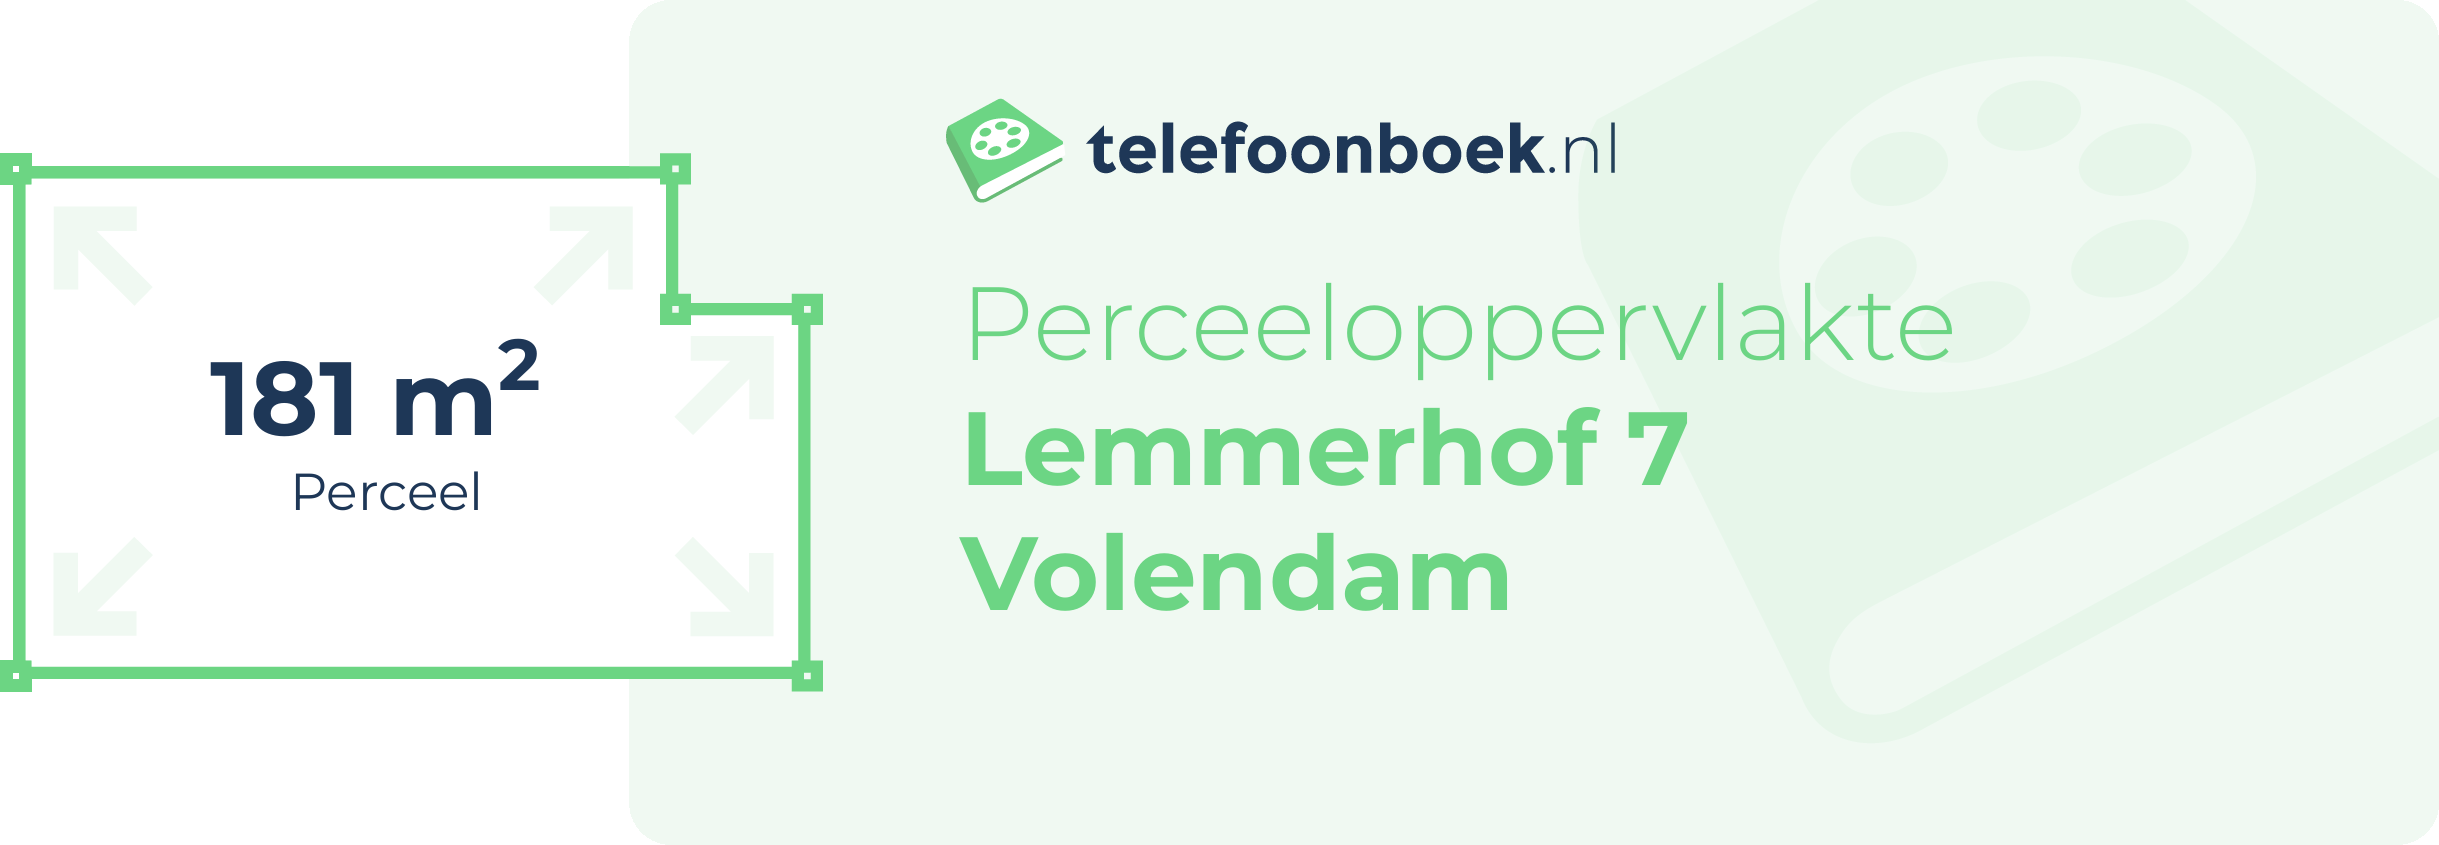 Perceeloppervlakte Lemmerhof 7 Volendam